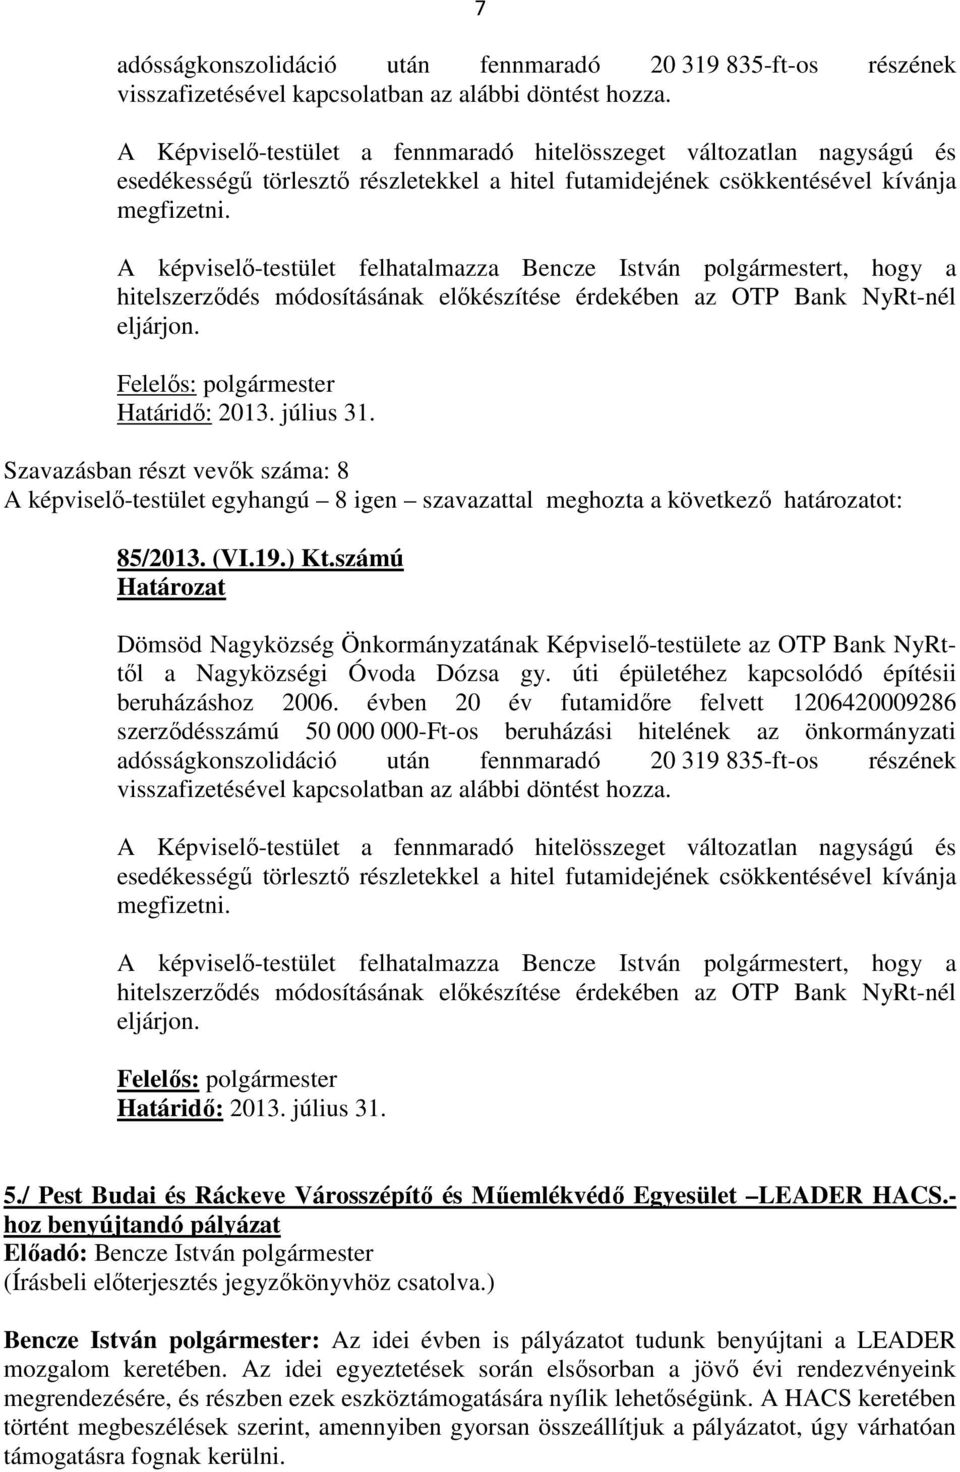 A képviselő-testület felhatalmazza Bencze István polgármestert, hogy a hitelszerződés módosításának előkészítése érdekében az OTP Bank NyRt-nél eljárjon. Felelős: polgármester Határidő: 2013.